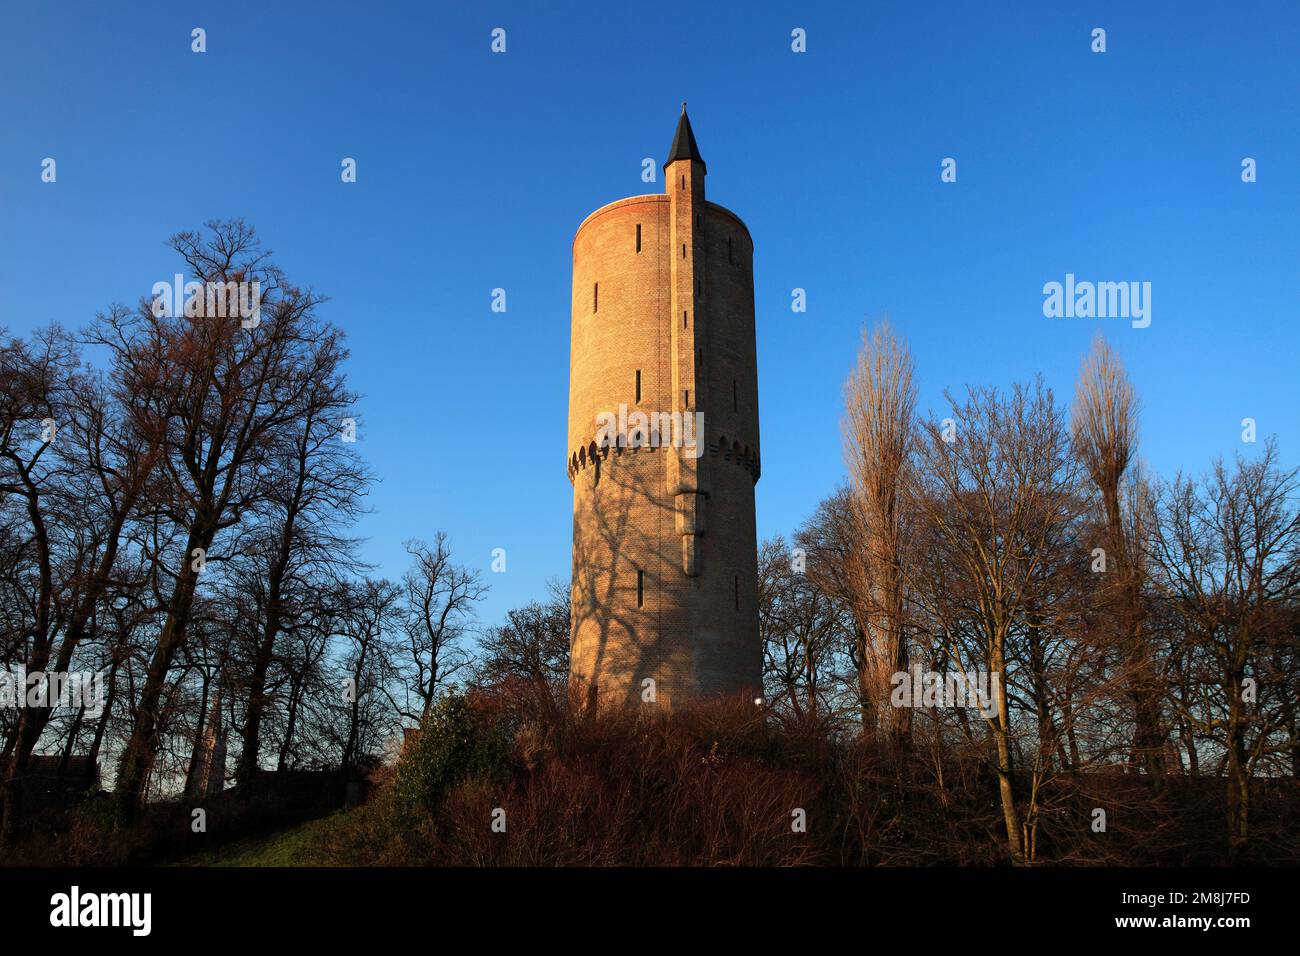 La torre delle polveri di Minnewater, il parco di Minnewater, la città di Bruges, Belgio Foto Stock